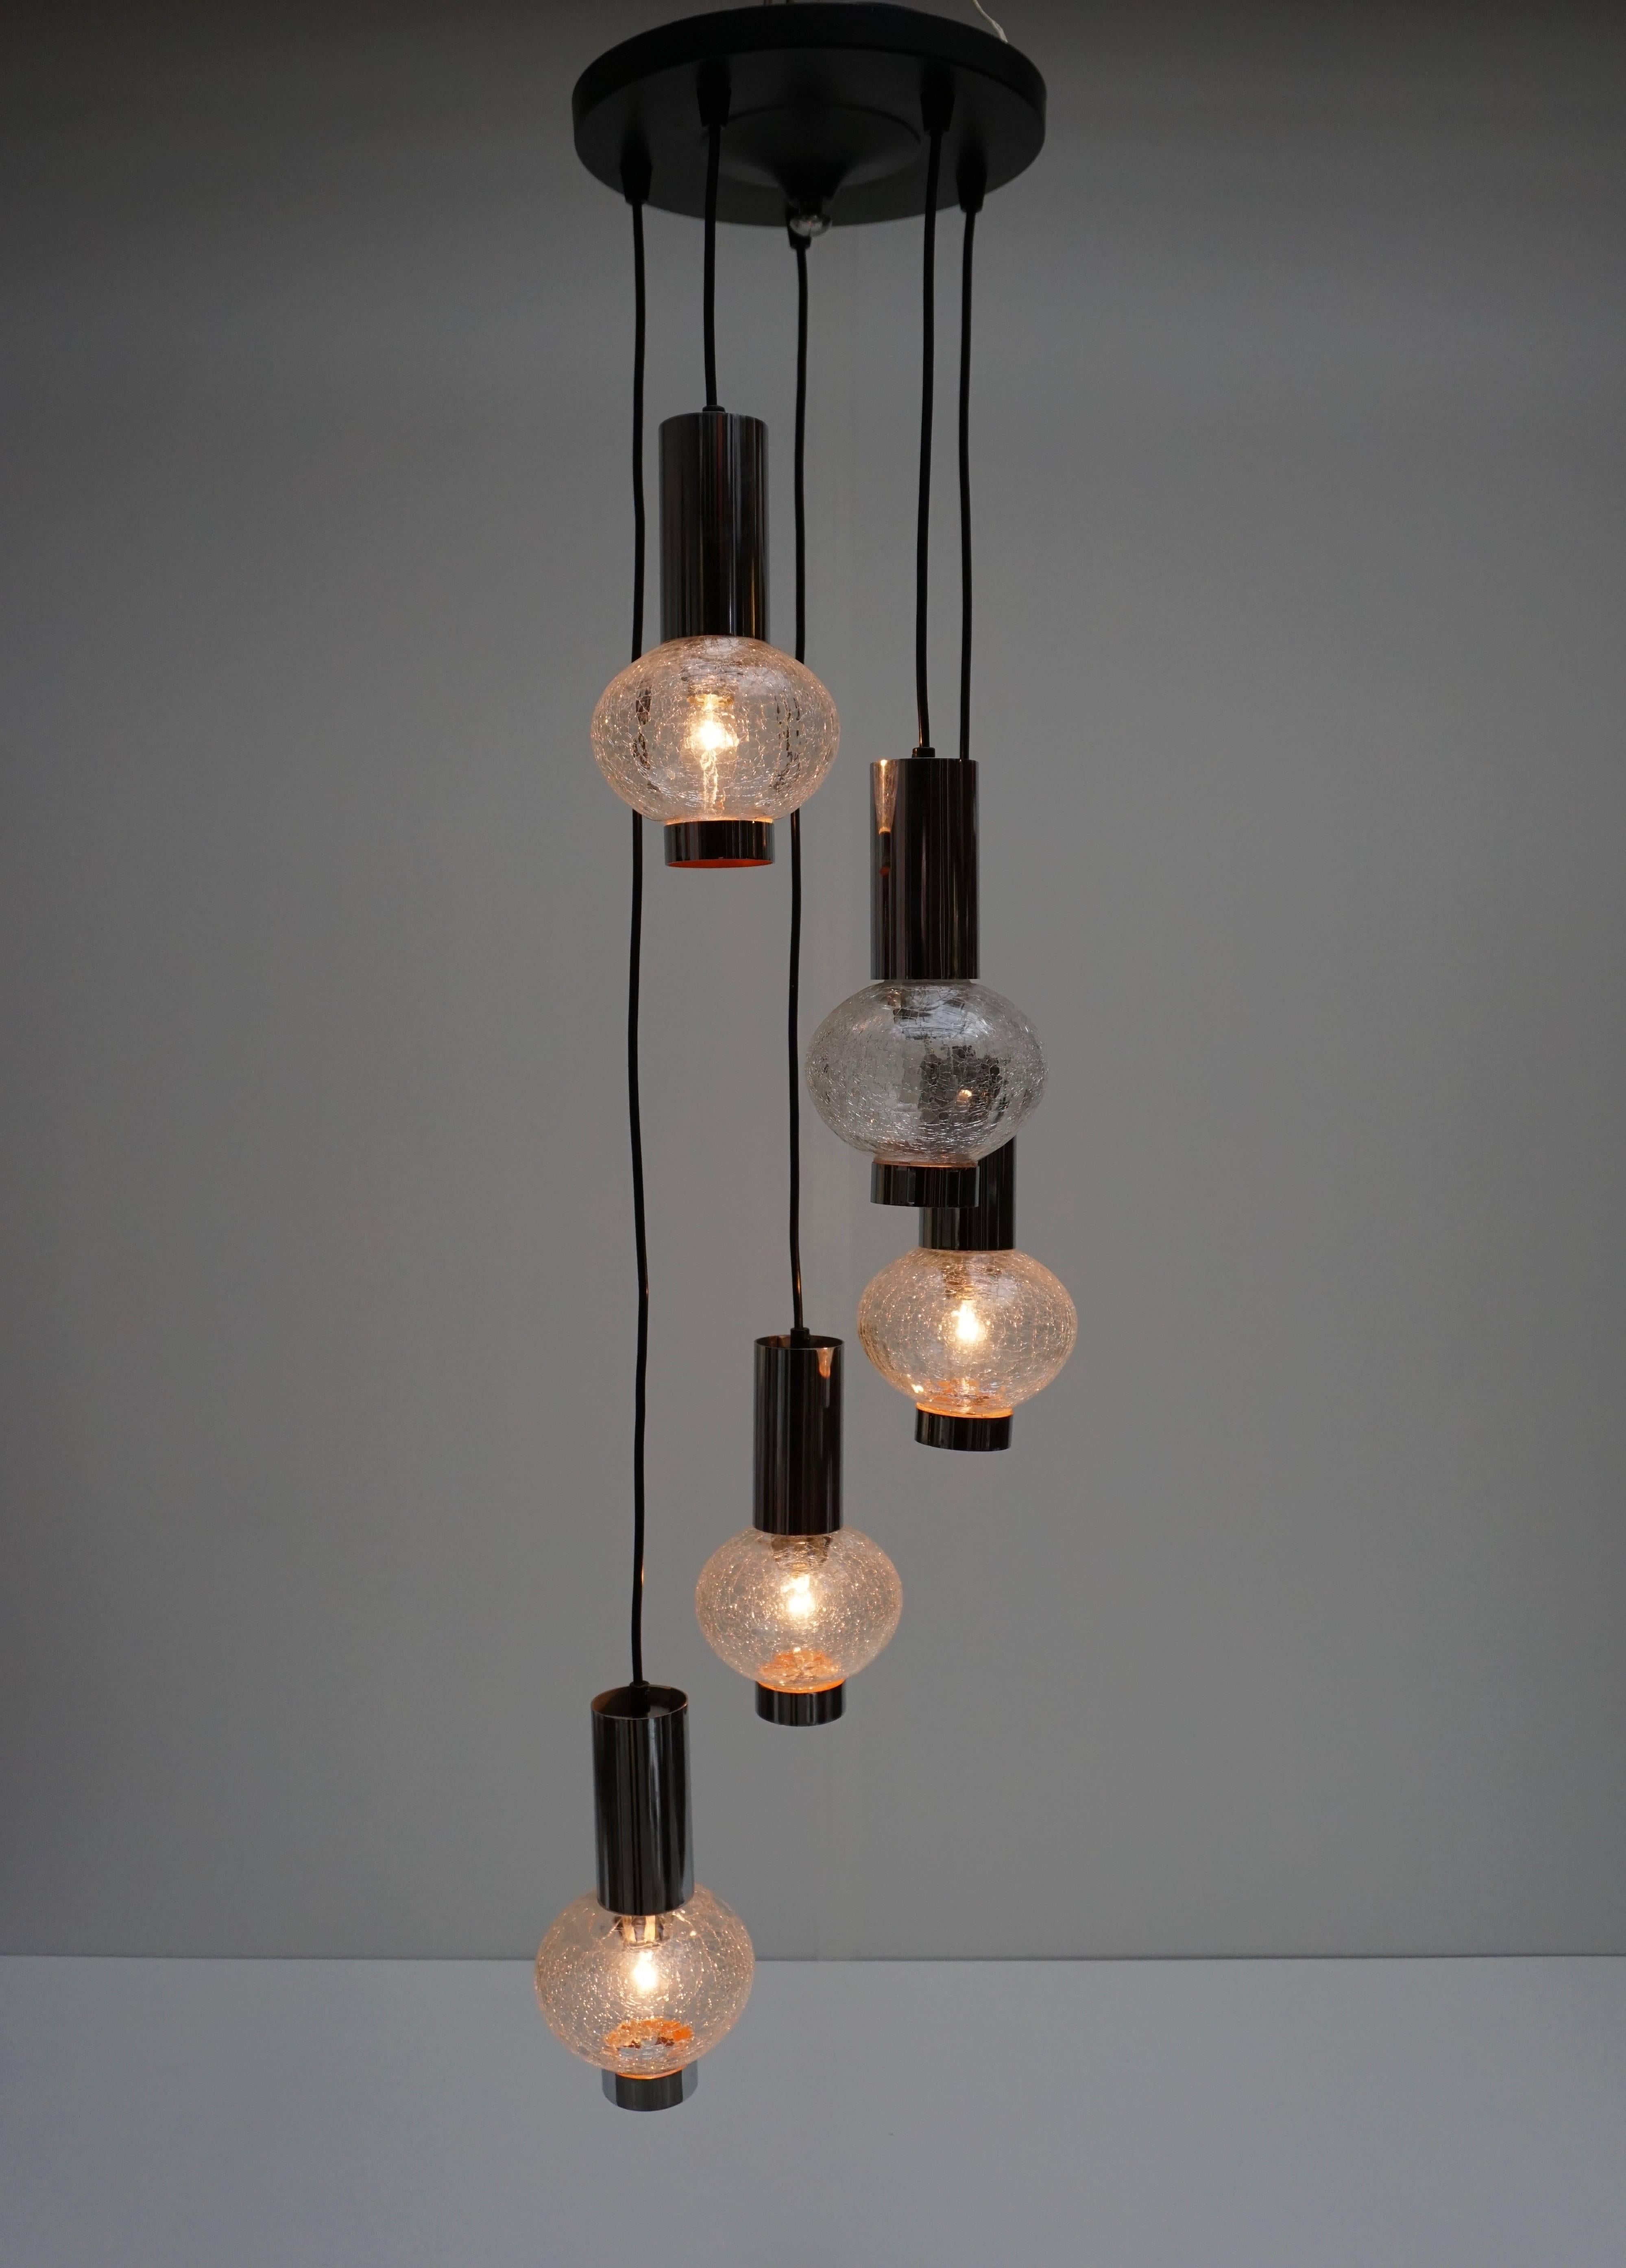 Lampe pendante italienne en verre de Murano avec cinq ampoules E14.
Mesures : Diamètre 32 cm.
Hauteur 120 cm.